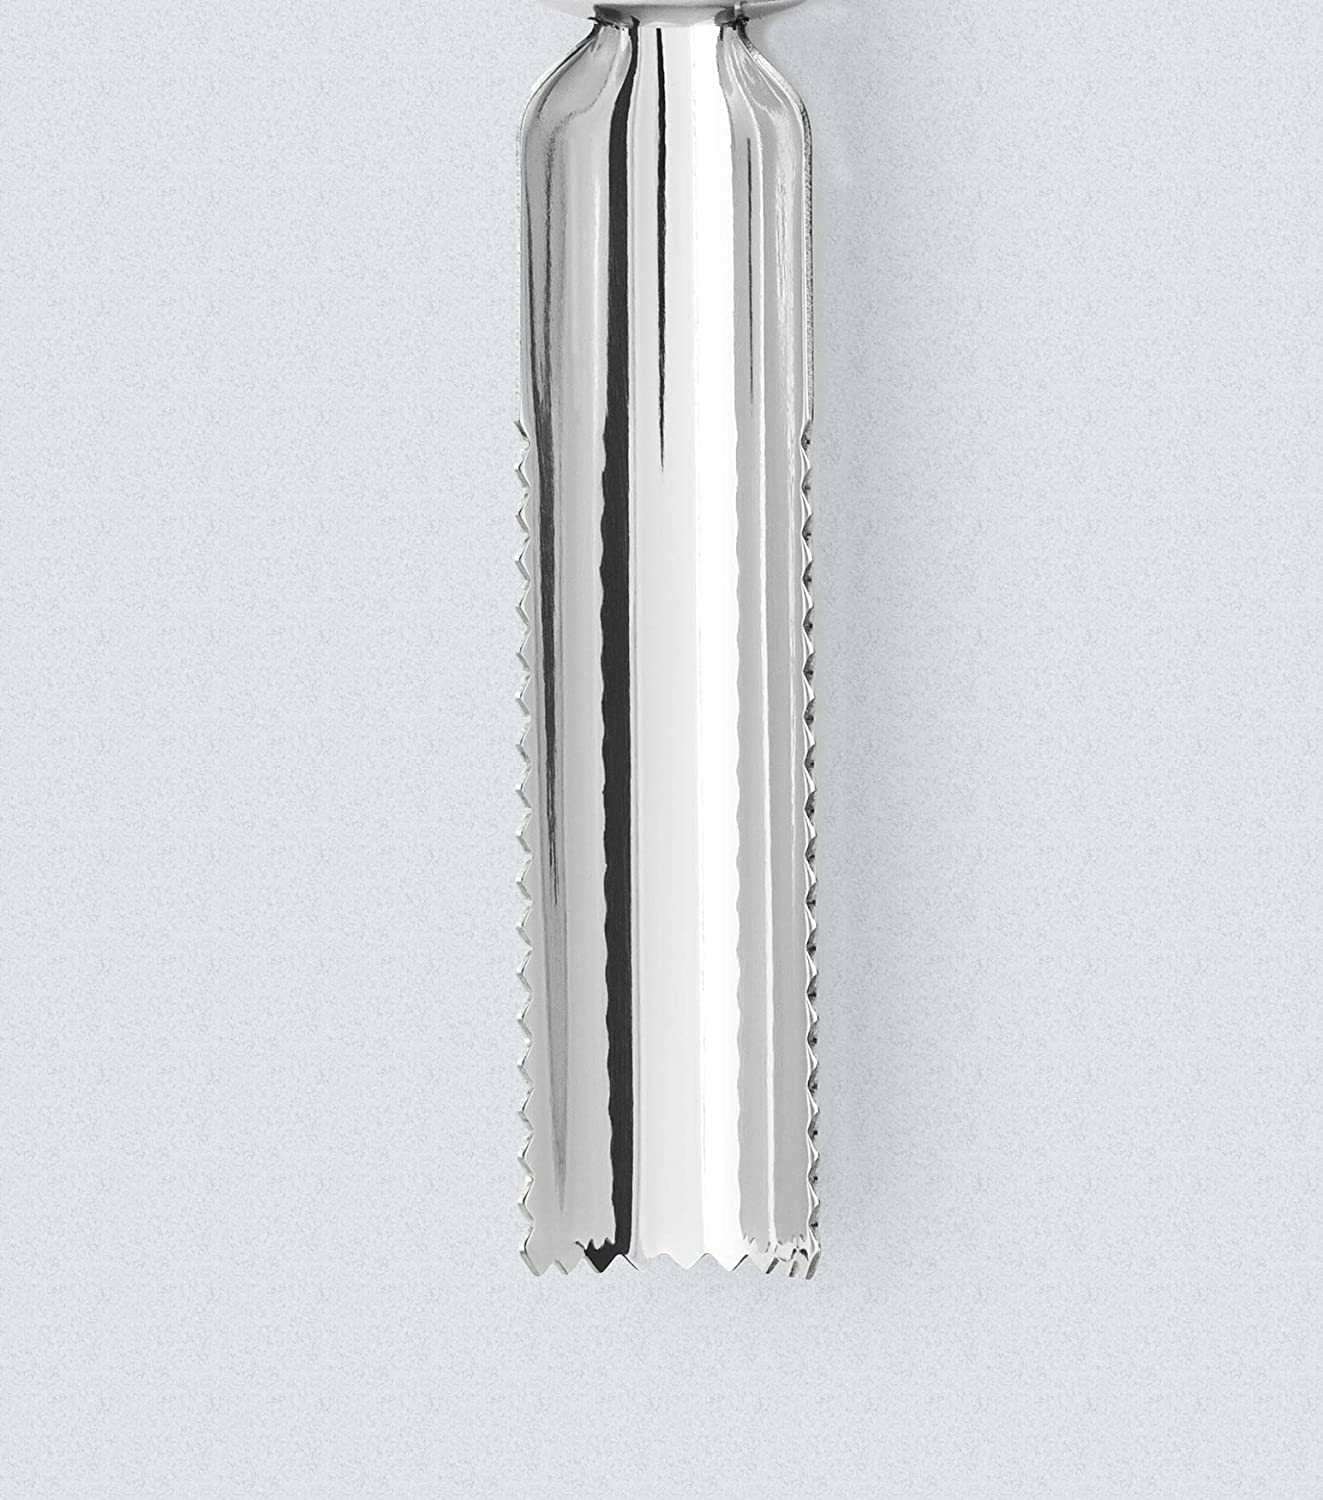 Apple corer, SilverSize: 17 cm